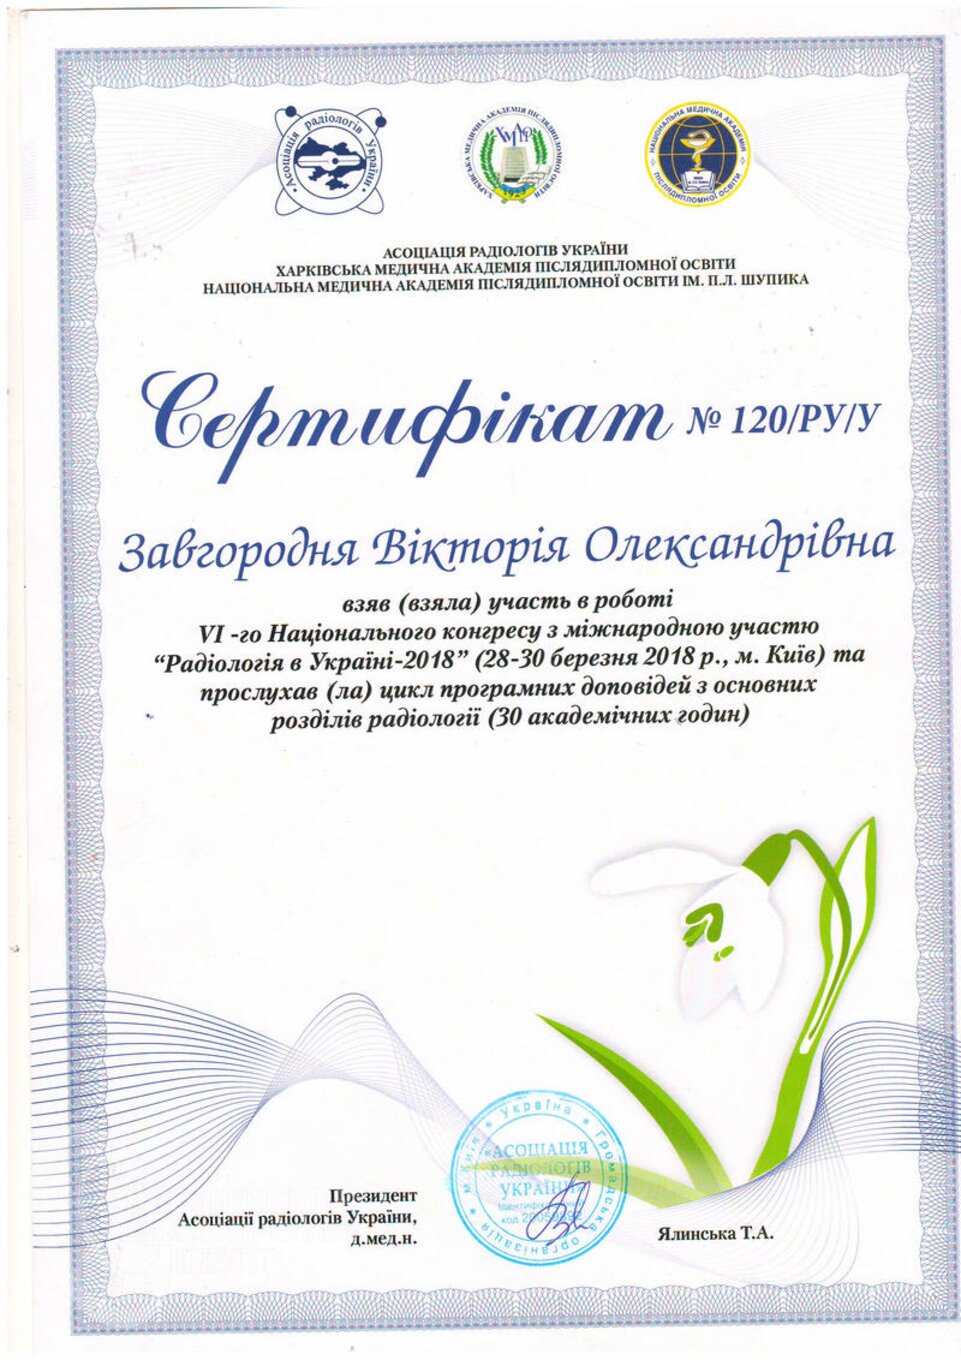 certificates/zavgorodnya-viktoriya-oleksandrivna/erc-zavgorodnyaja-certificates-03.jpg